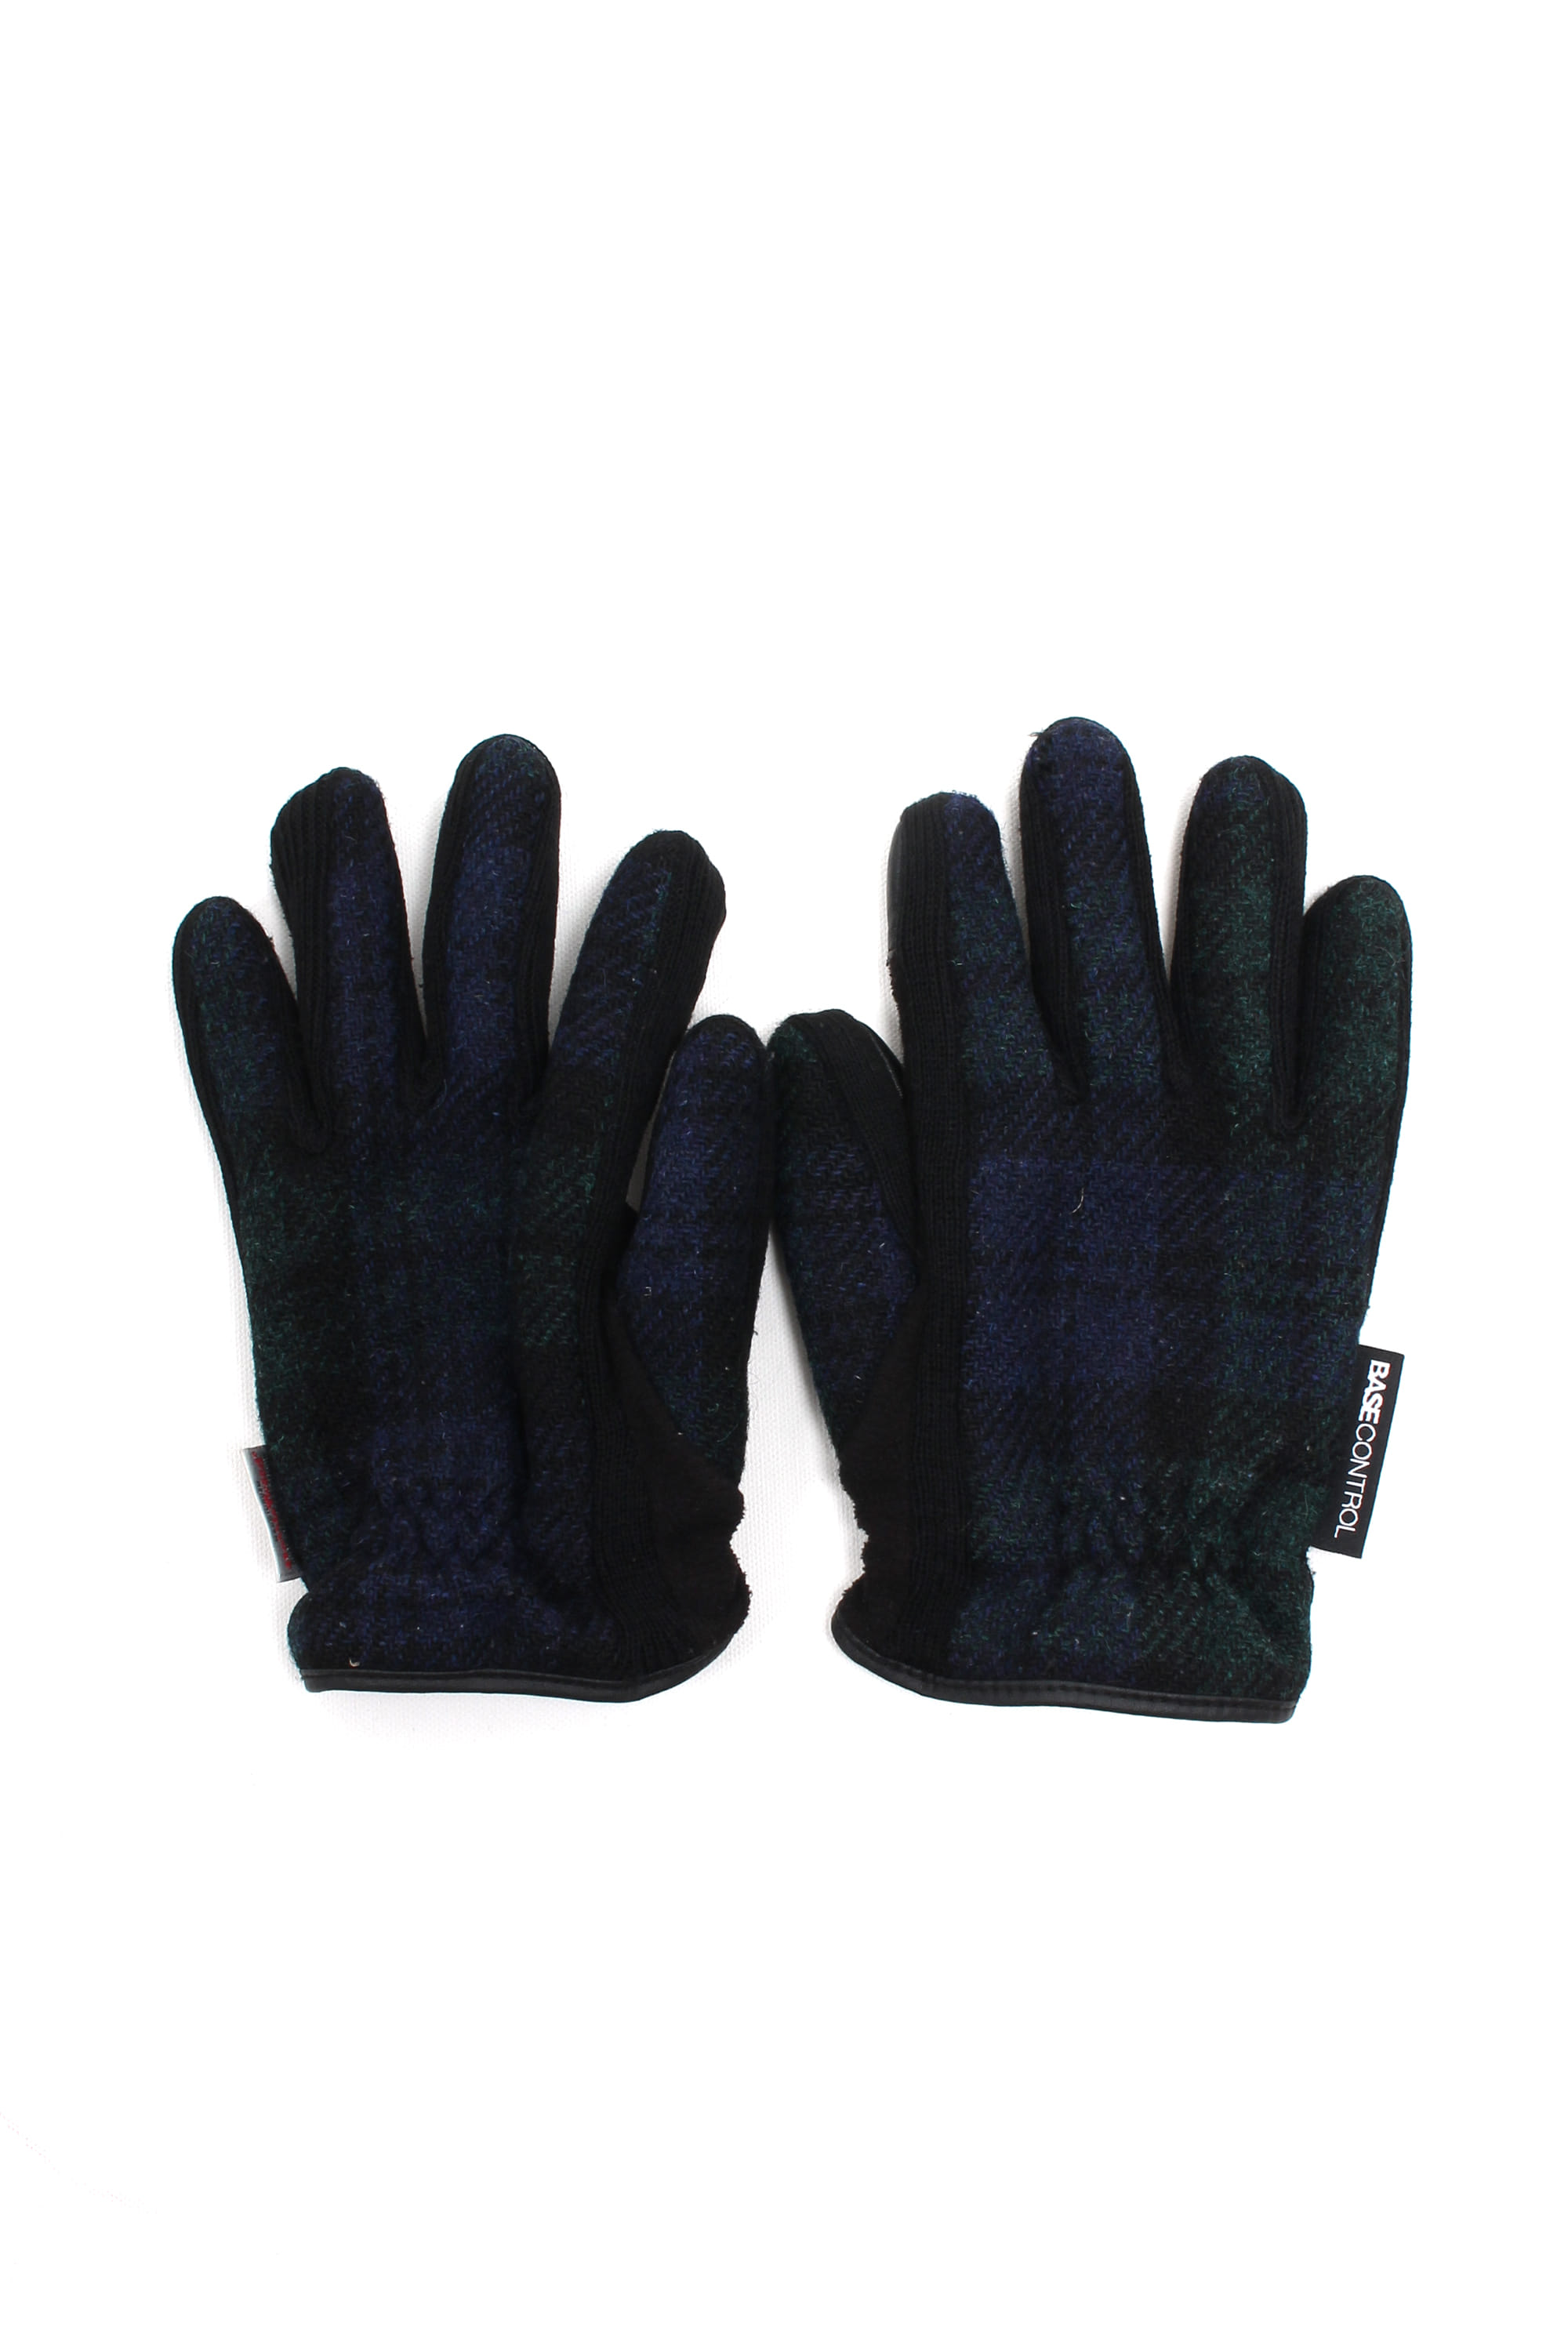 Harris Tweed Gloves